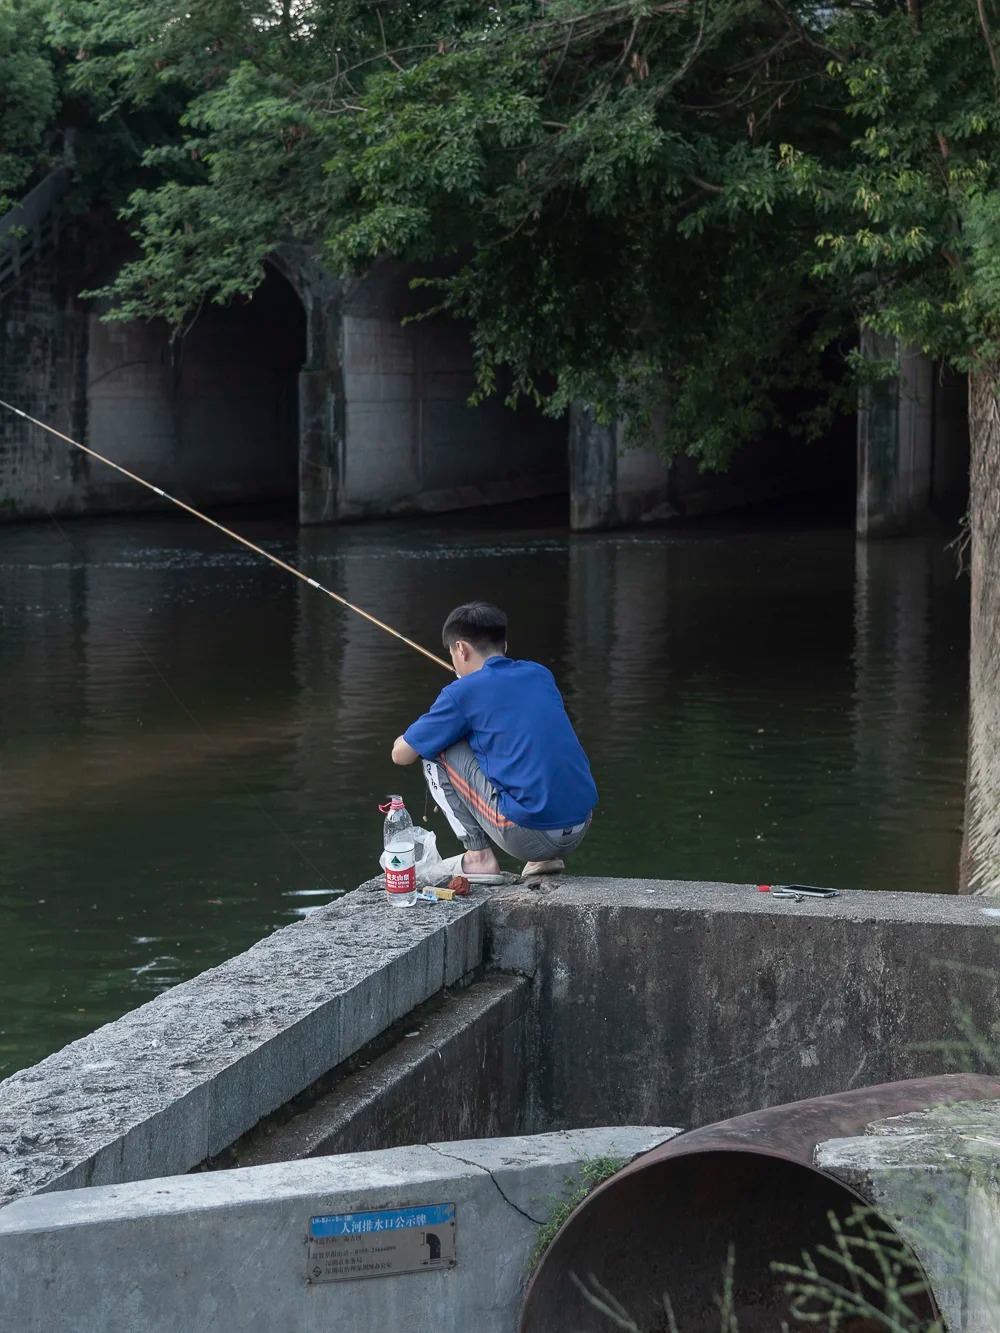 布吉河吸引许多人钓鱼。小红书